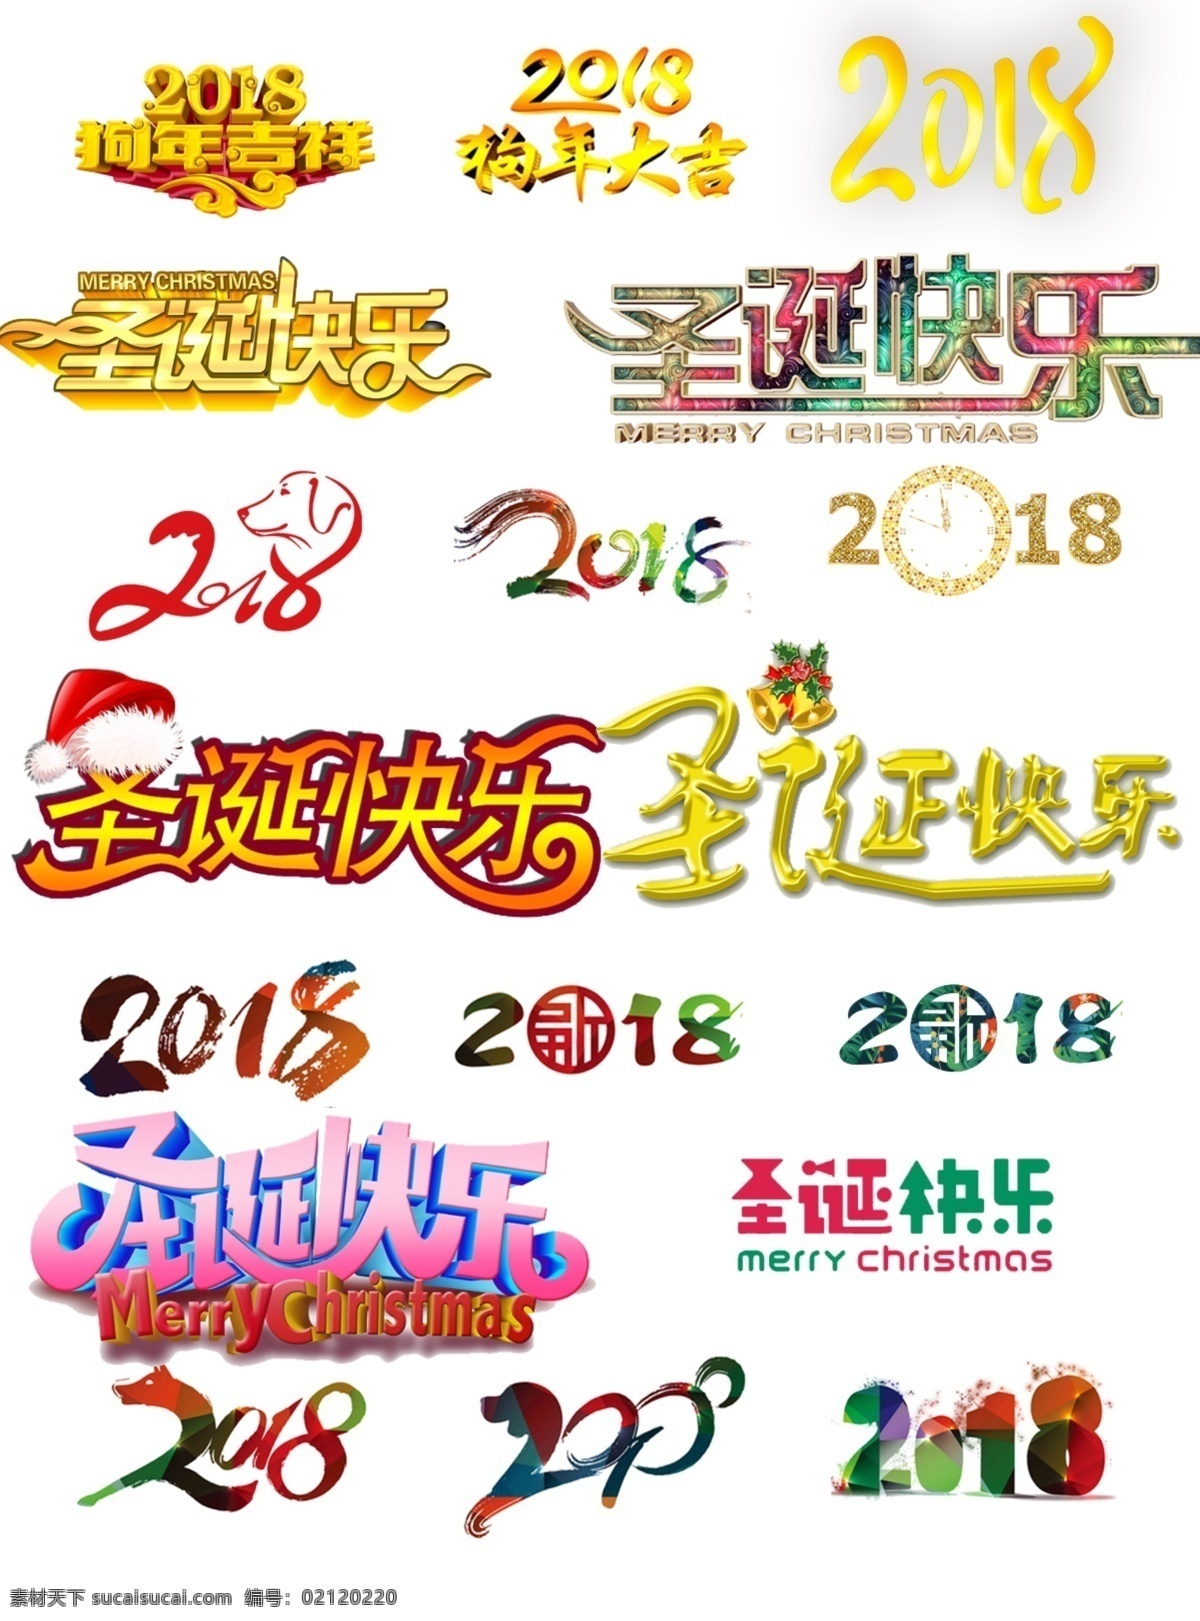 淘宝 圣诞节 2018 2018新春 年货节 圣诞快乐